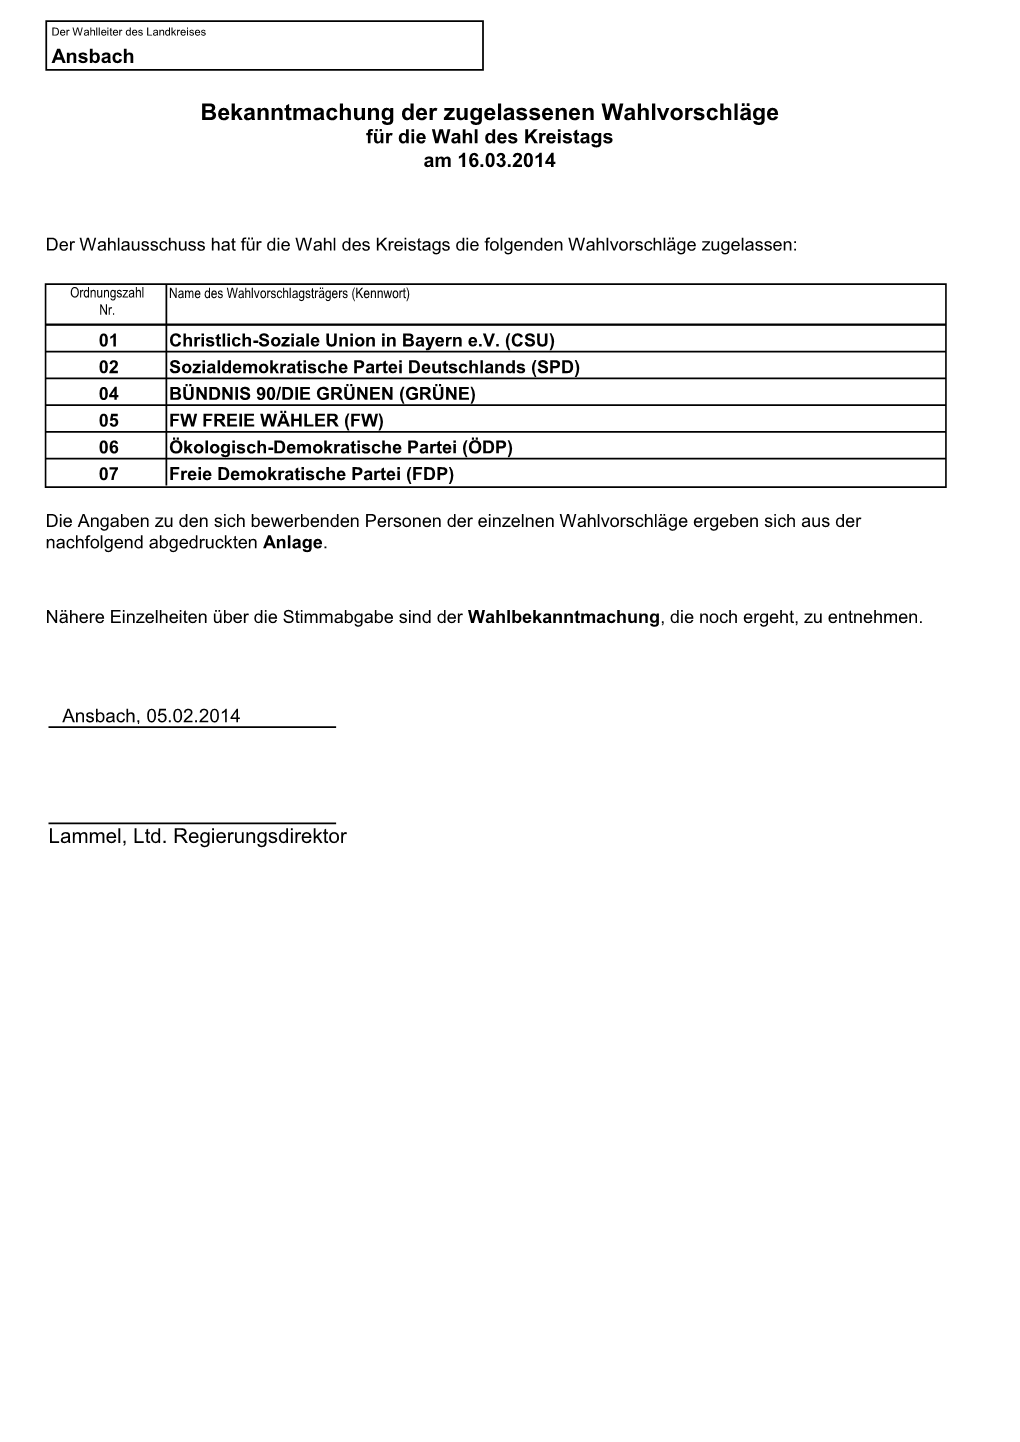 Bekanntmachung Der Zugelassenen Wahlvorschläge Für Die Wahl Des Kreistags Am 16.03.2014